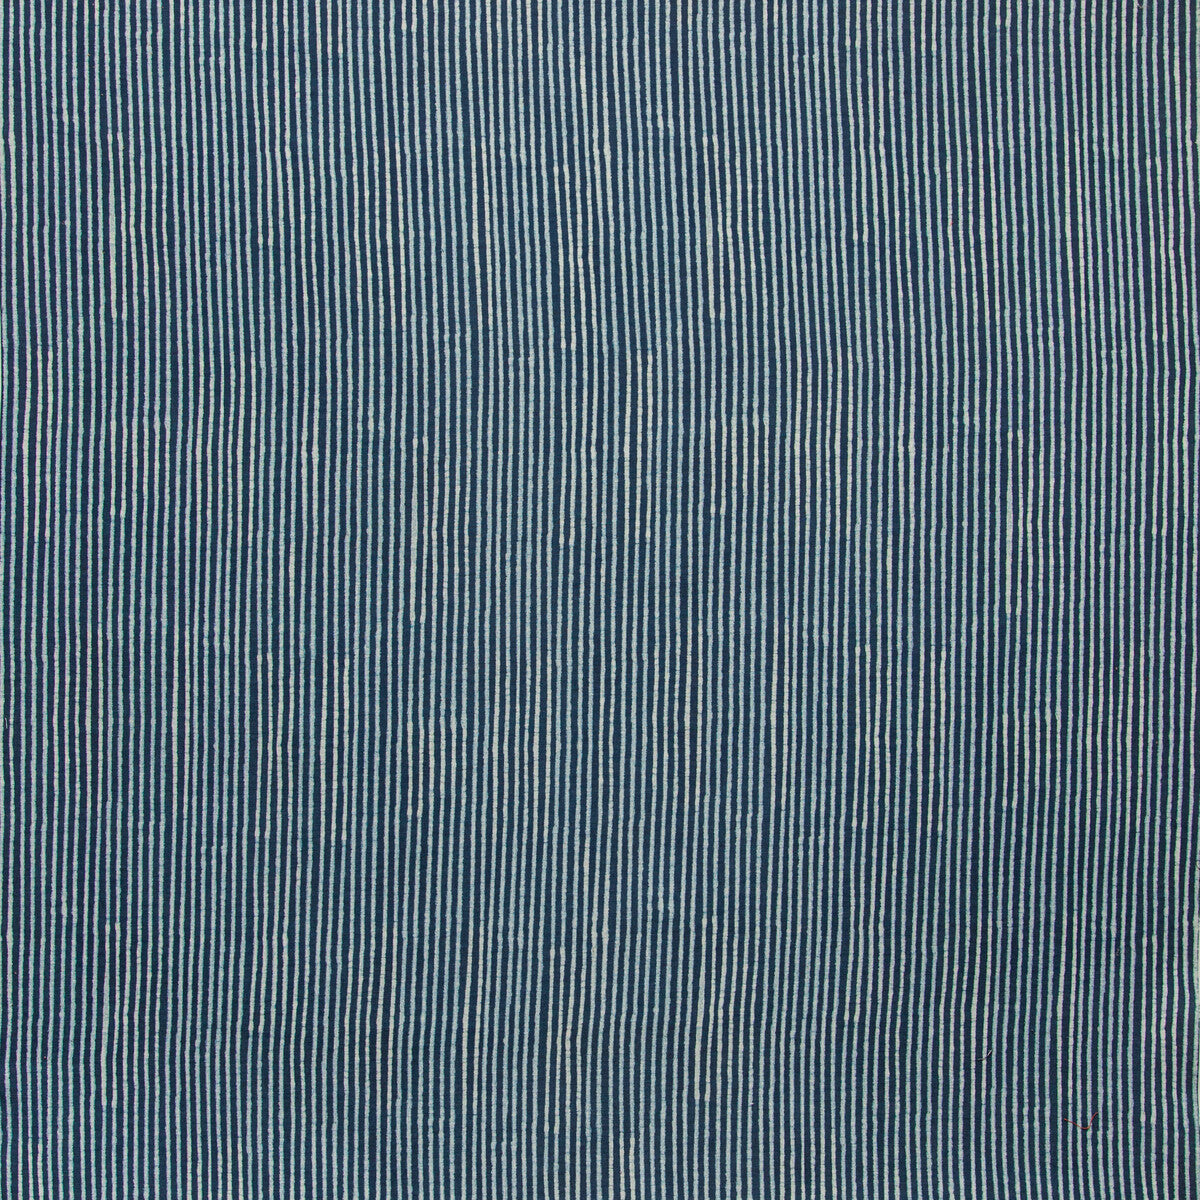 Bandol fabric in indigo color - pattern 2019125.501.0 - by Lee Jofa